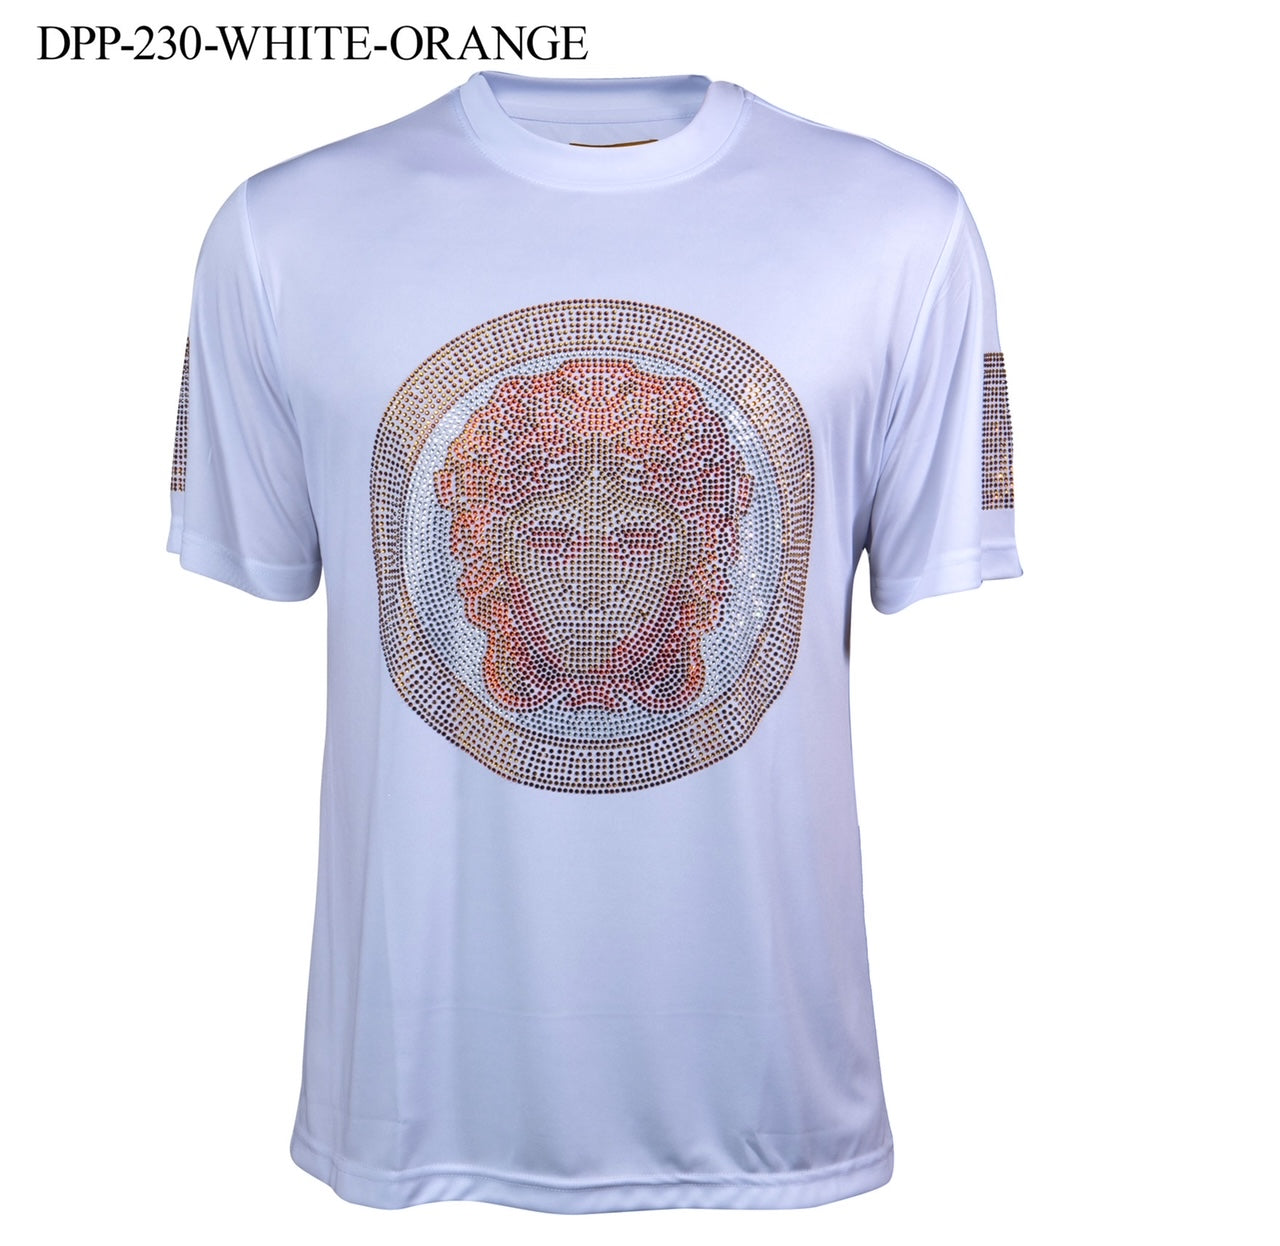 Prestige Greek Head T-Shirt 230